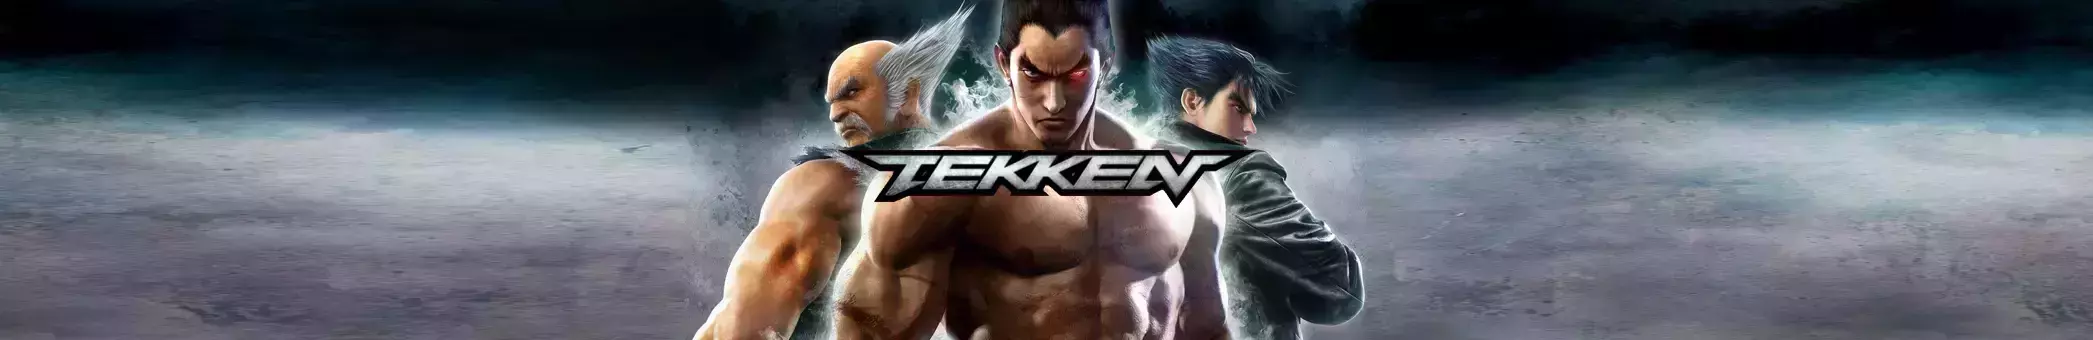 Tekken Digital Edition